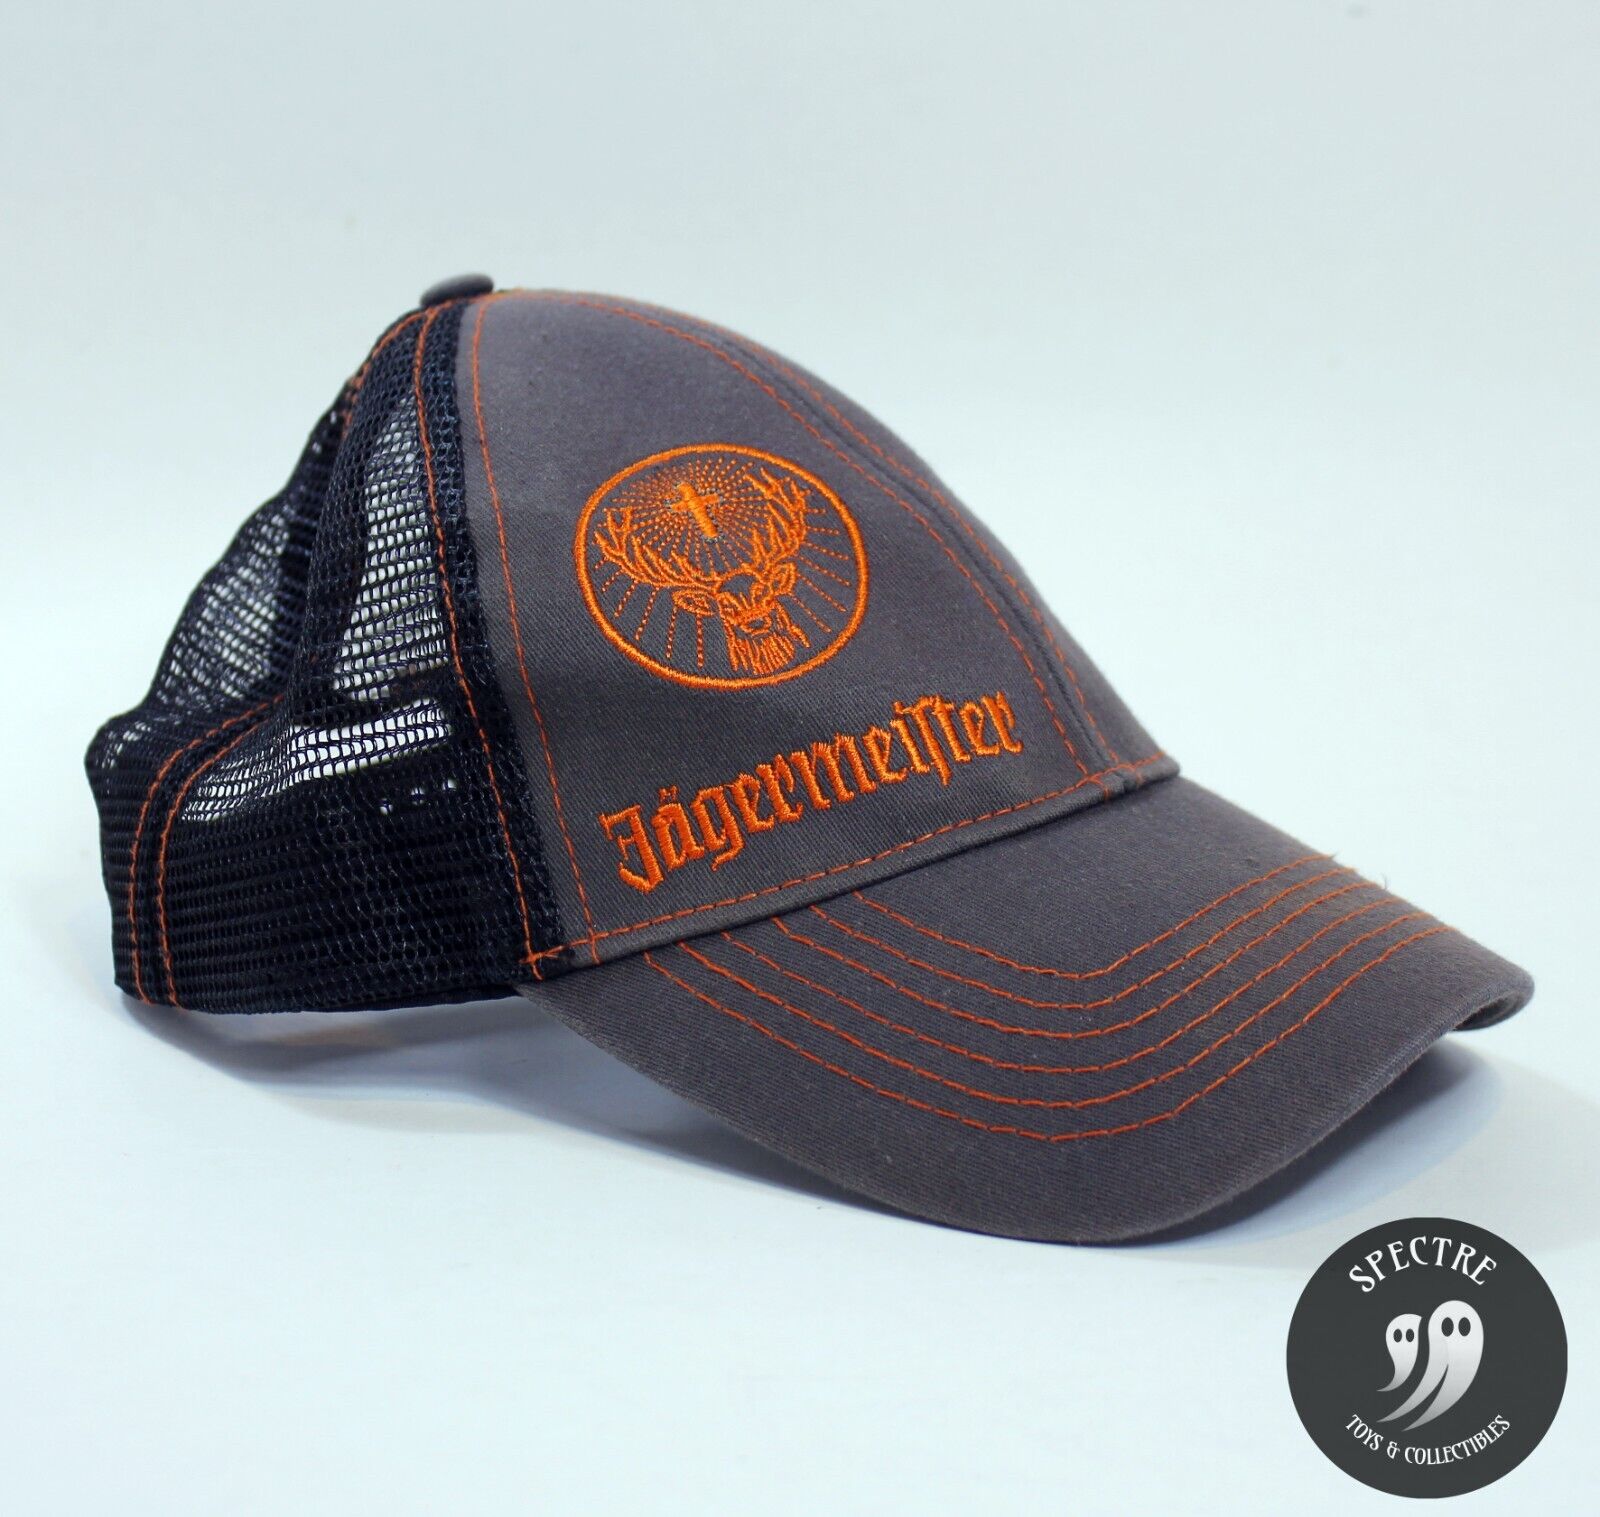 Jägermeister Black/Orange Embroidered Trucker Snapback Adjustable Cap